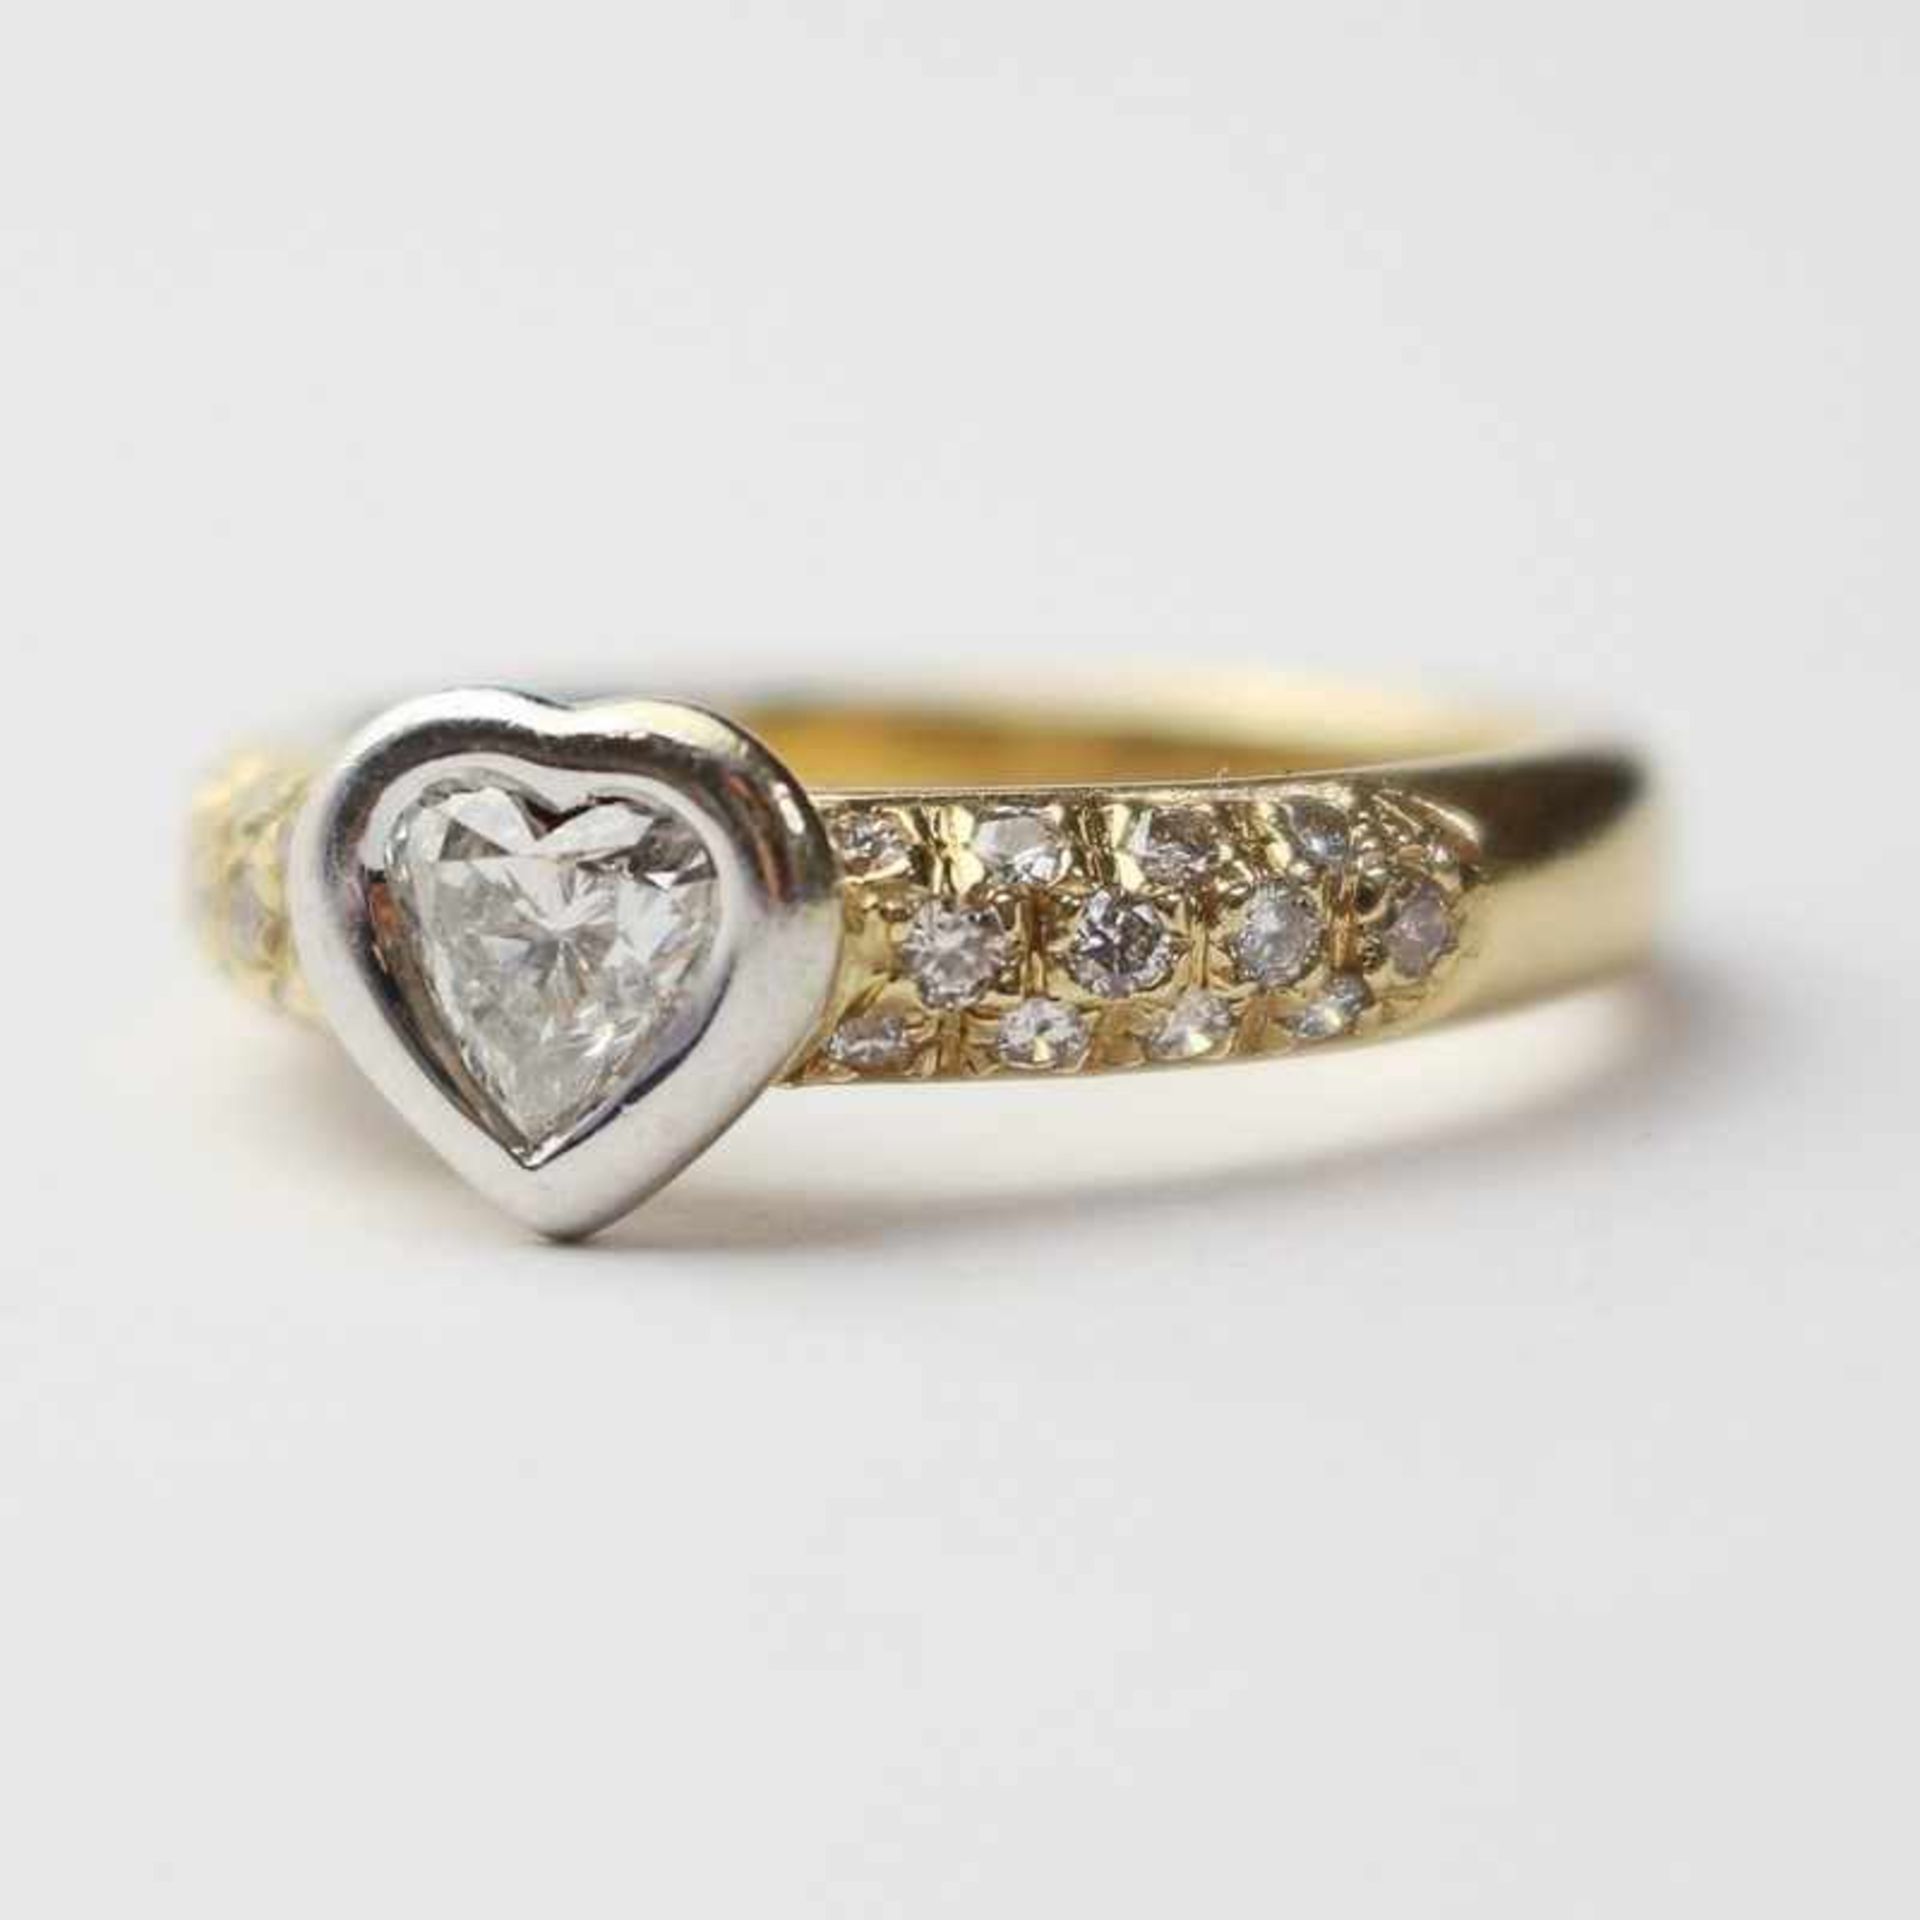 Damenring - Diamant GG/WG 585, herzförmiger Ringkopf sowie Ringschultern besetzt mit Diamanten,